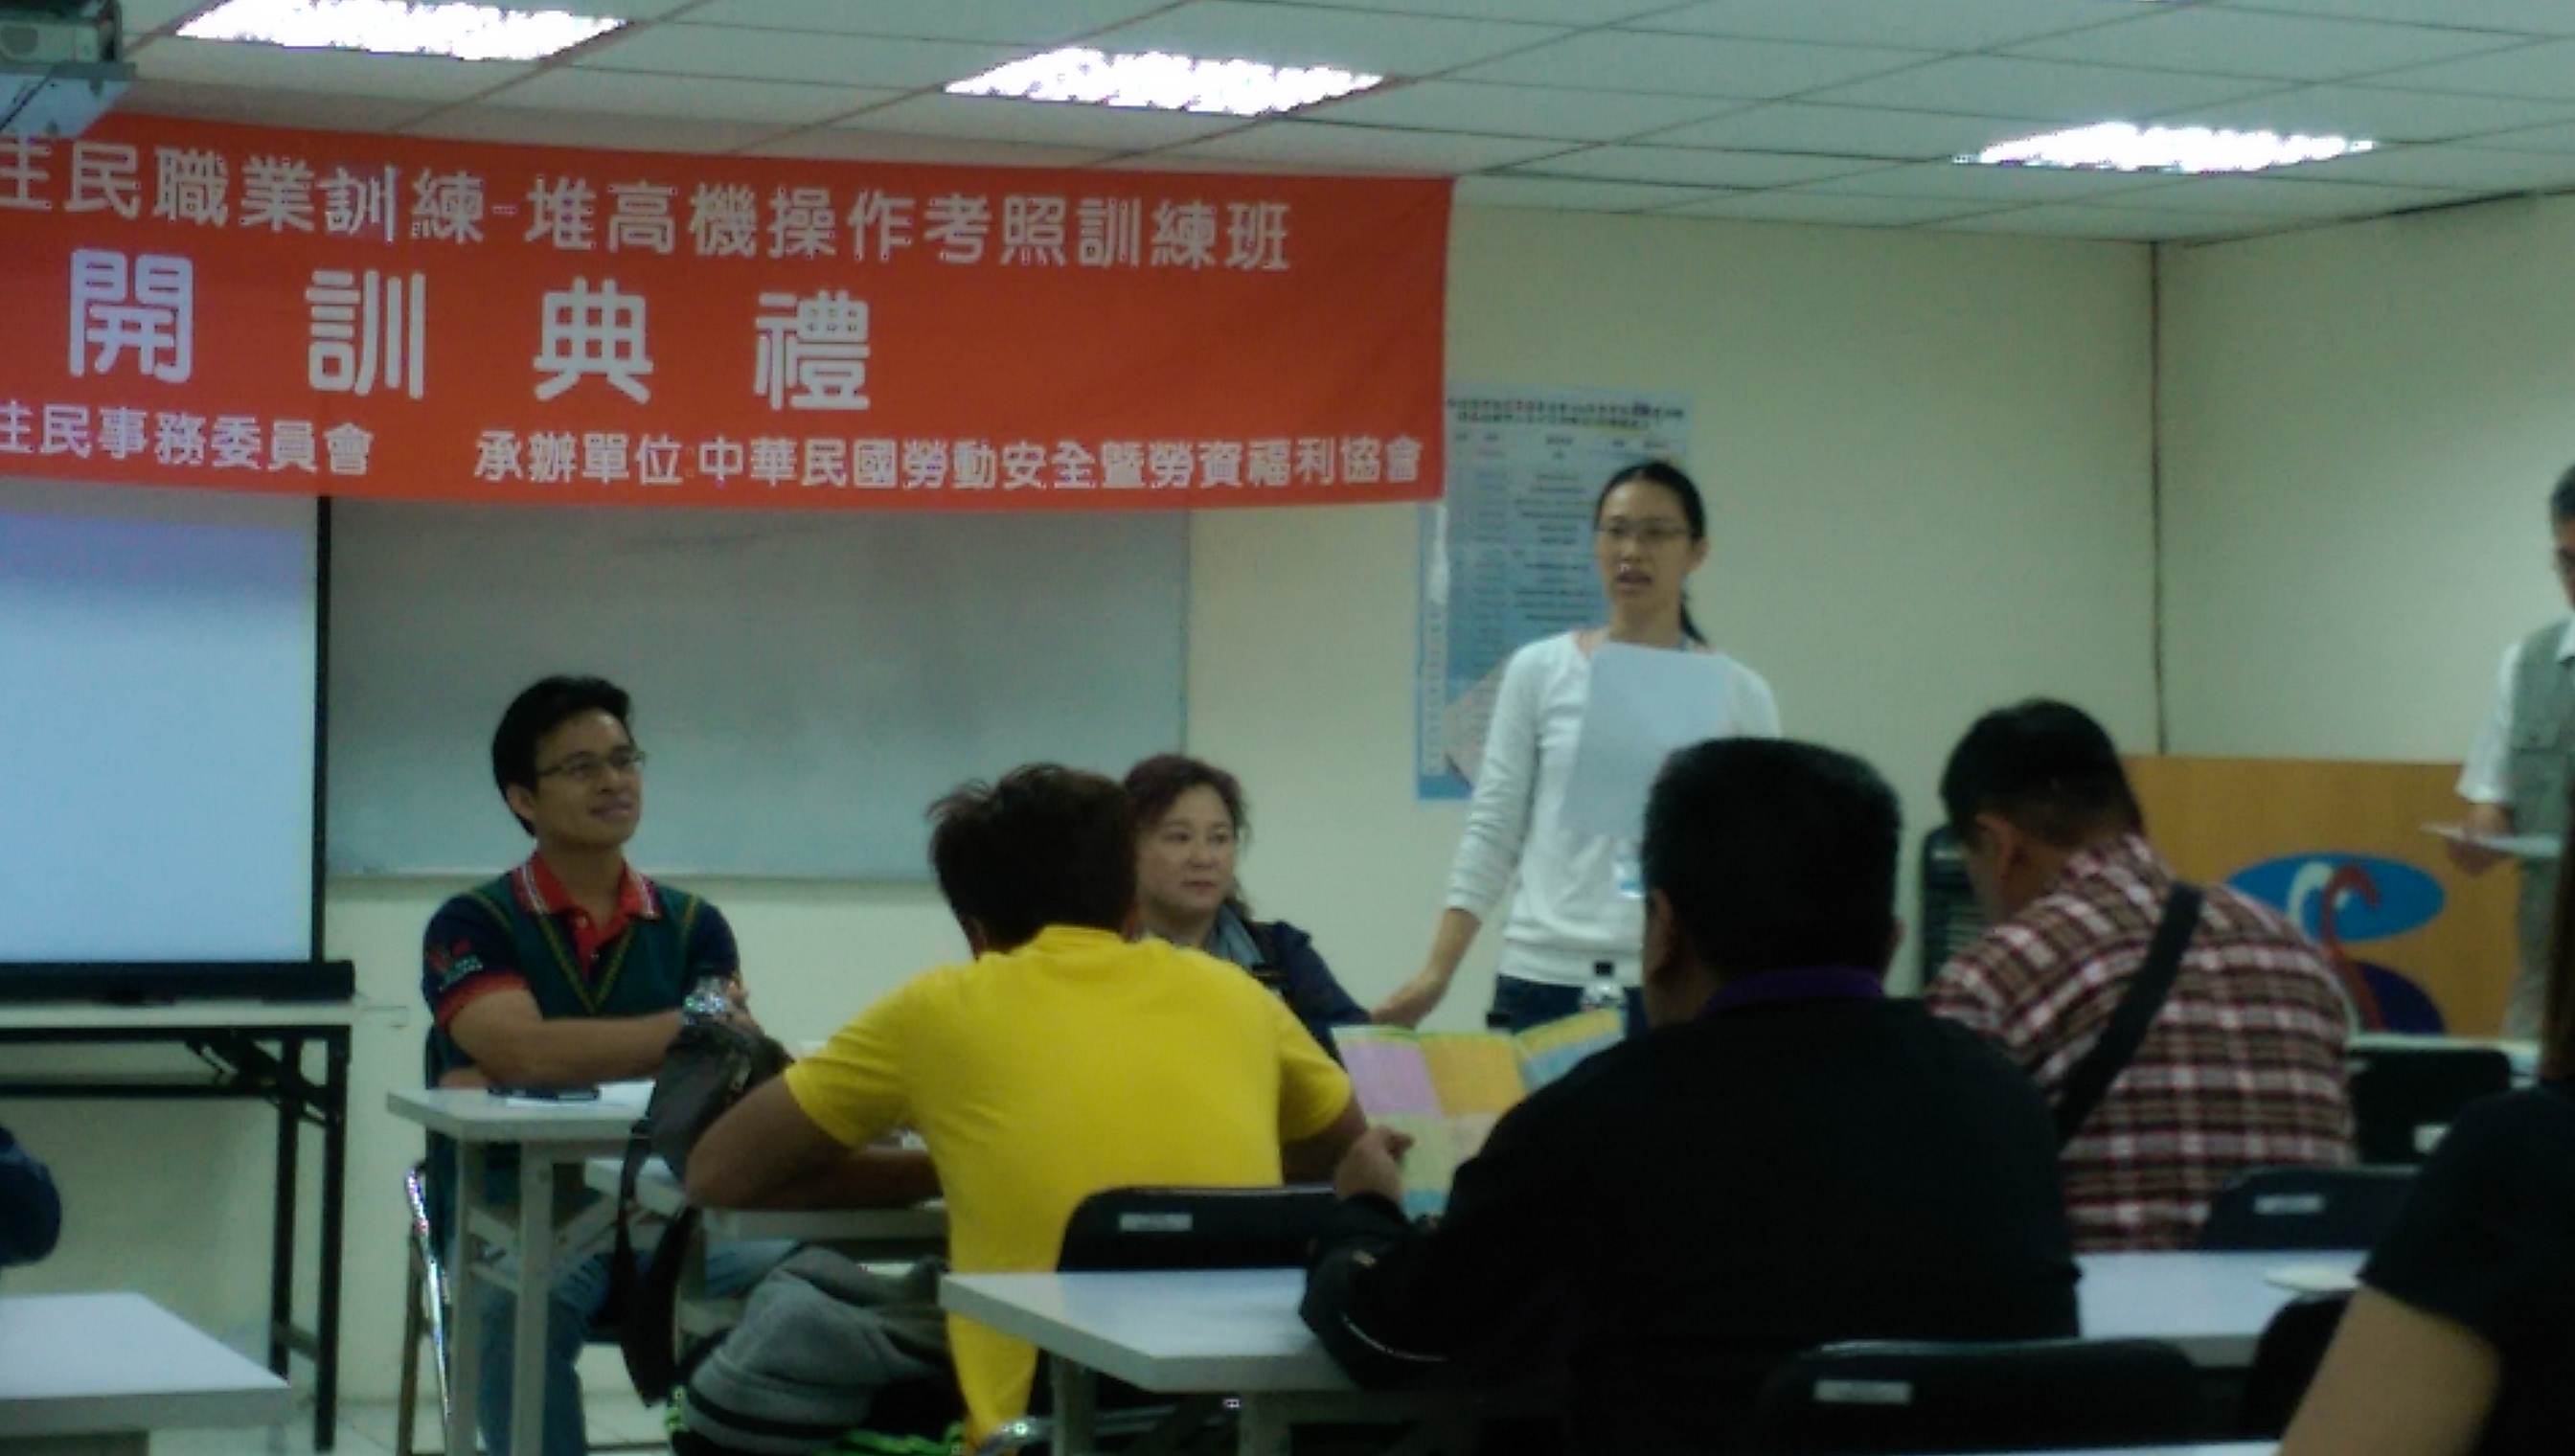 中華民國勞動安全暨勞資福利協會人員向主委及學員報告與解說課程內容